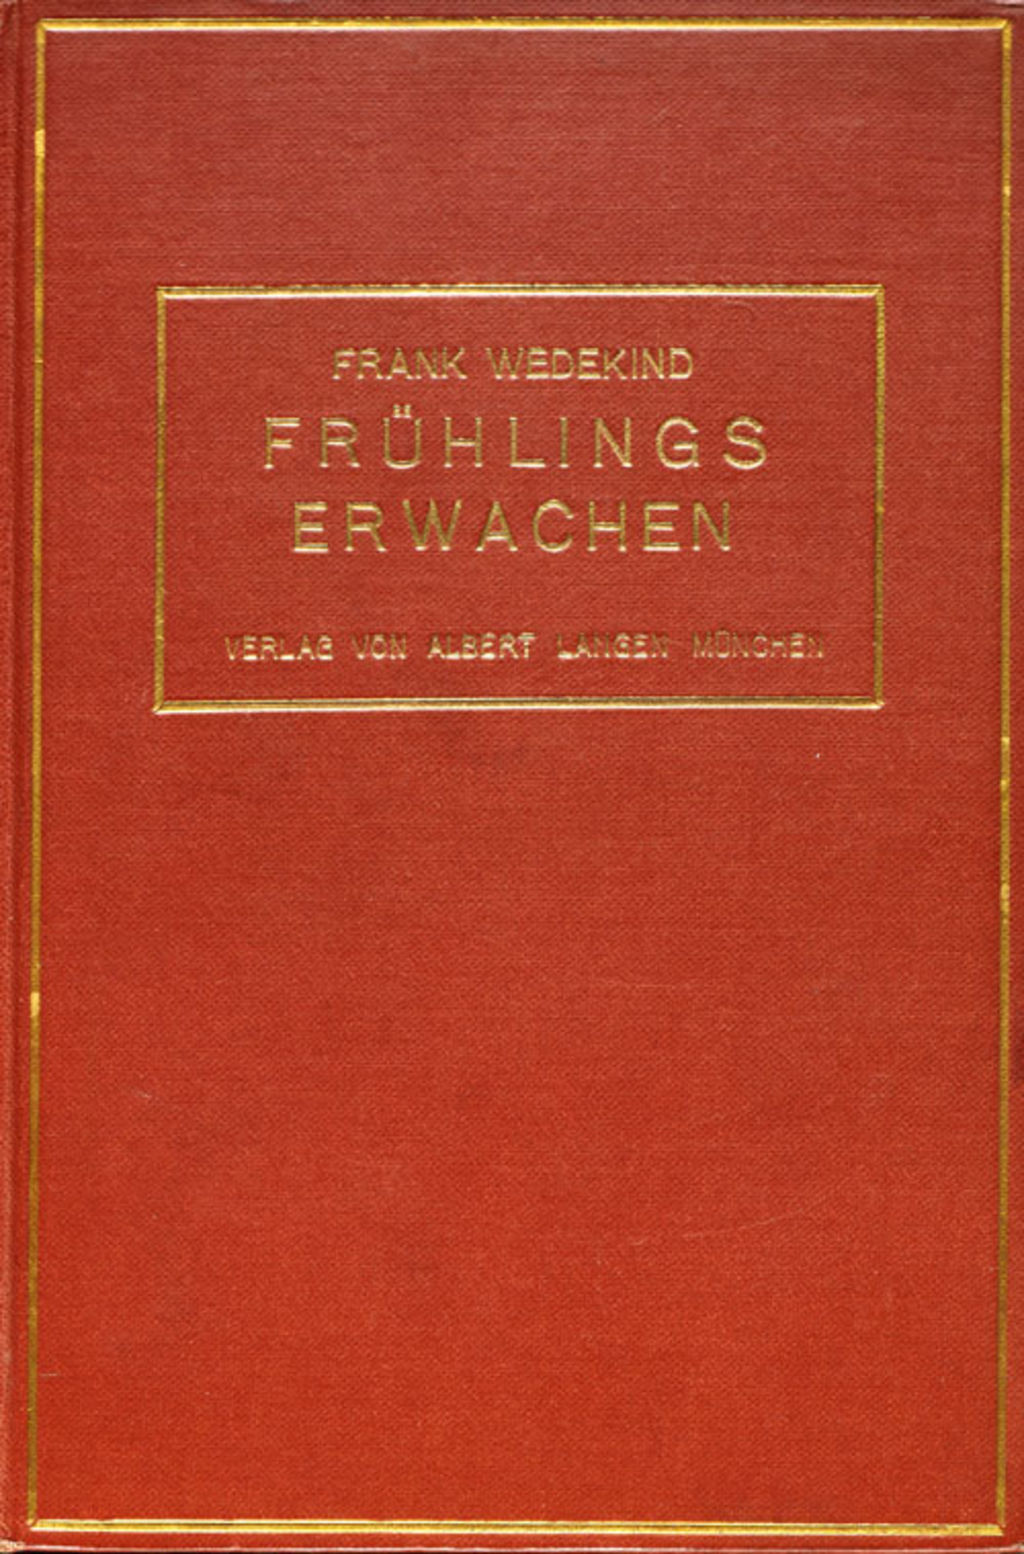 Buch: Wedekind, Frank "Frühlings Erwachen", 1907